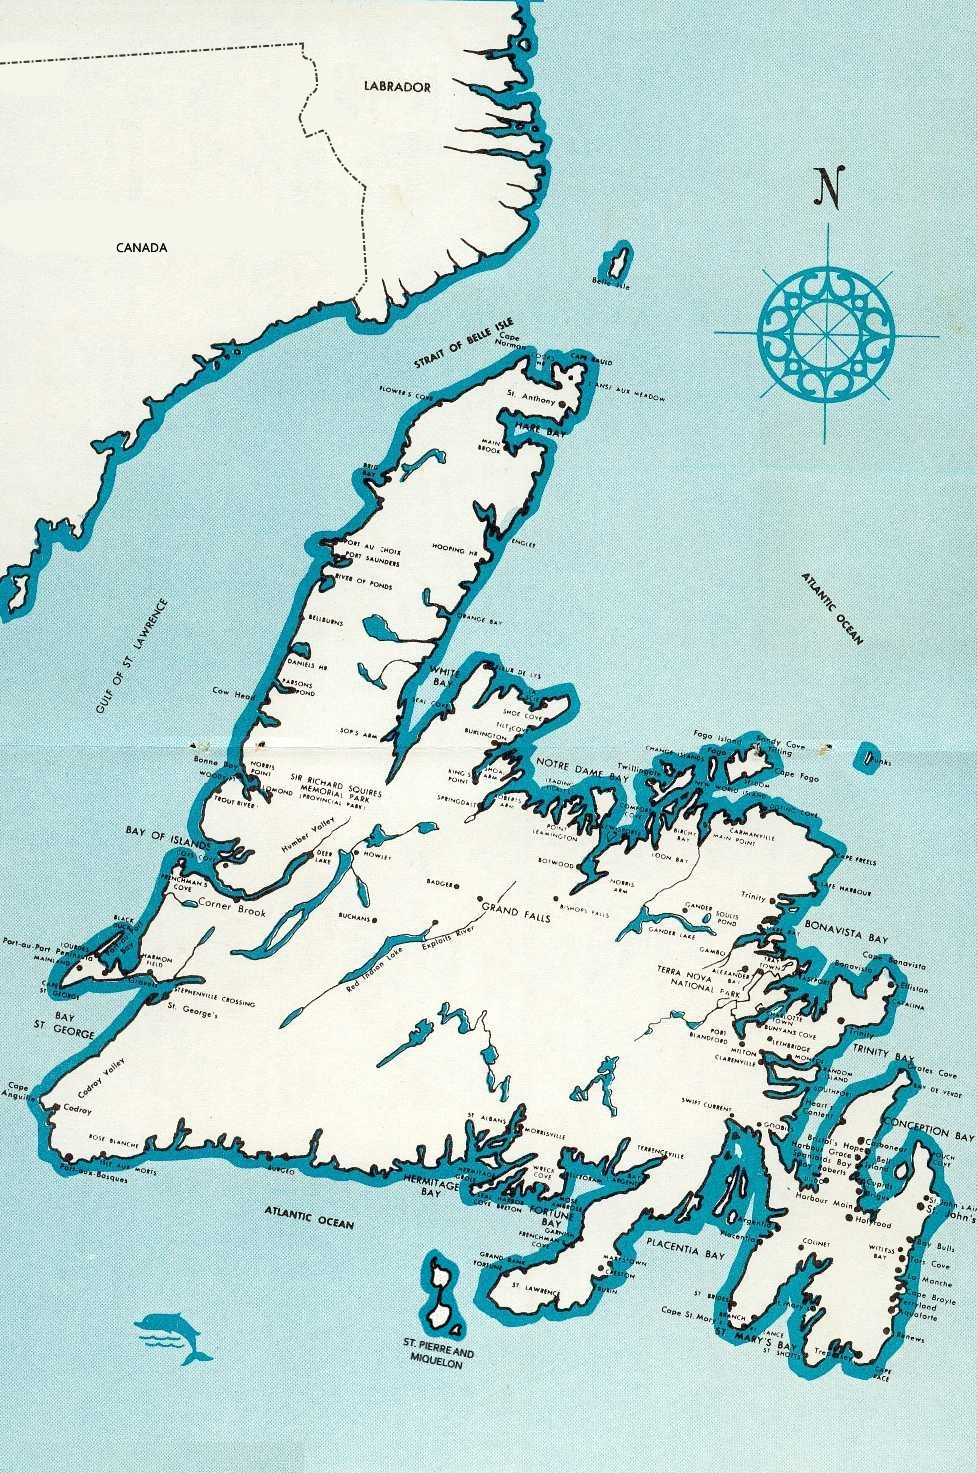 Где остров ньюфаундленд. Ньюфаундленд полуостров. Ньюфаундлендская котловина. Остров ньюфаундленд на карте Северной Америки. Полуостров лабрадор.